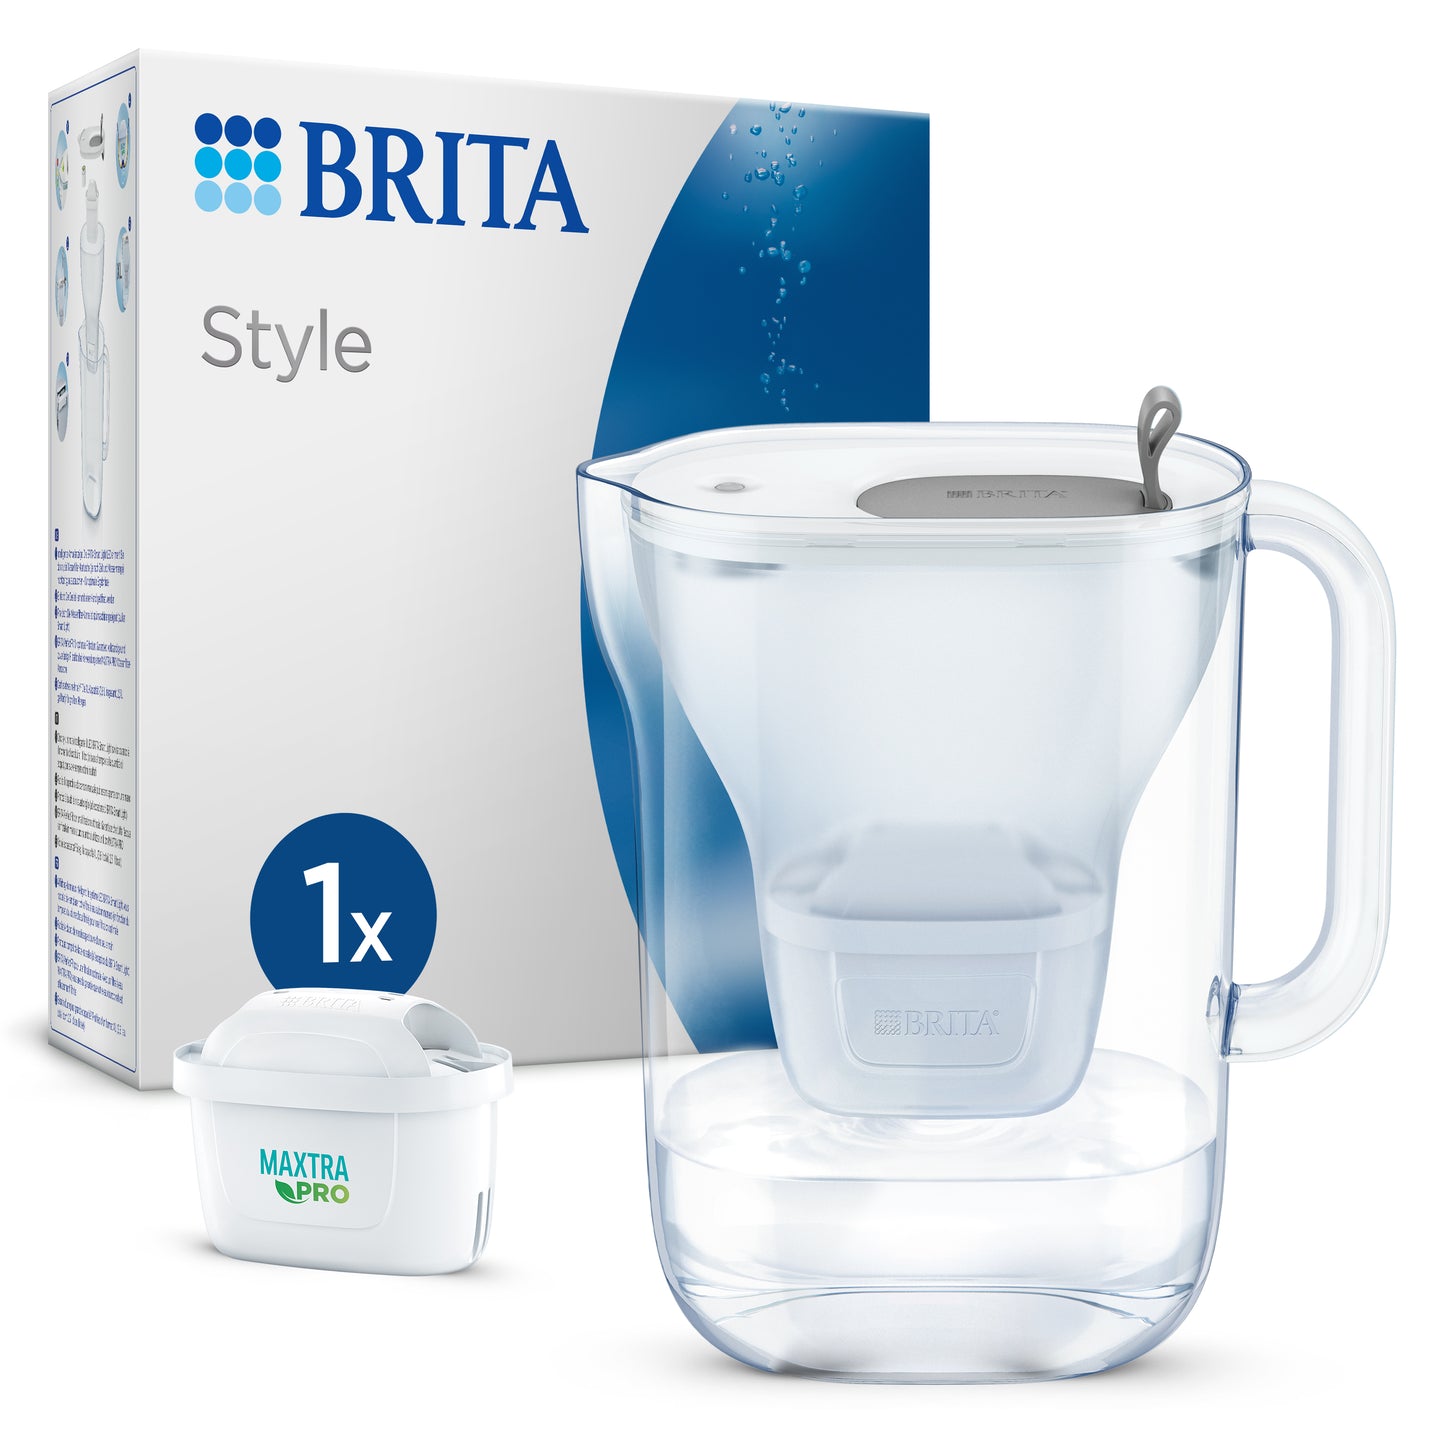 Caraffa filtrante per Acqua Style Grey (2,4 L) Filtro Maxtra Pro All-in-1, Brita